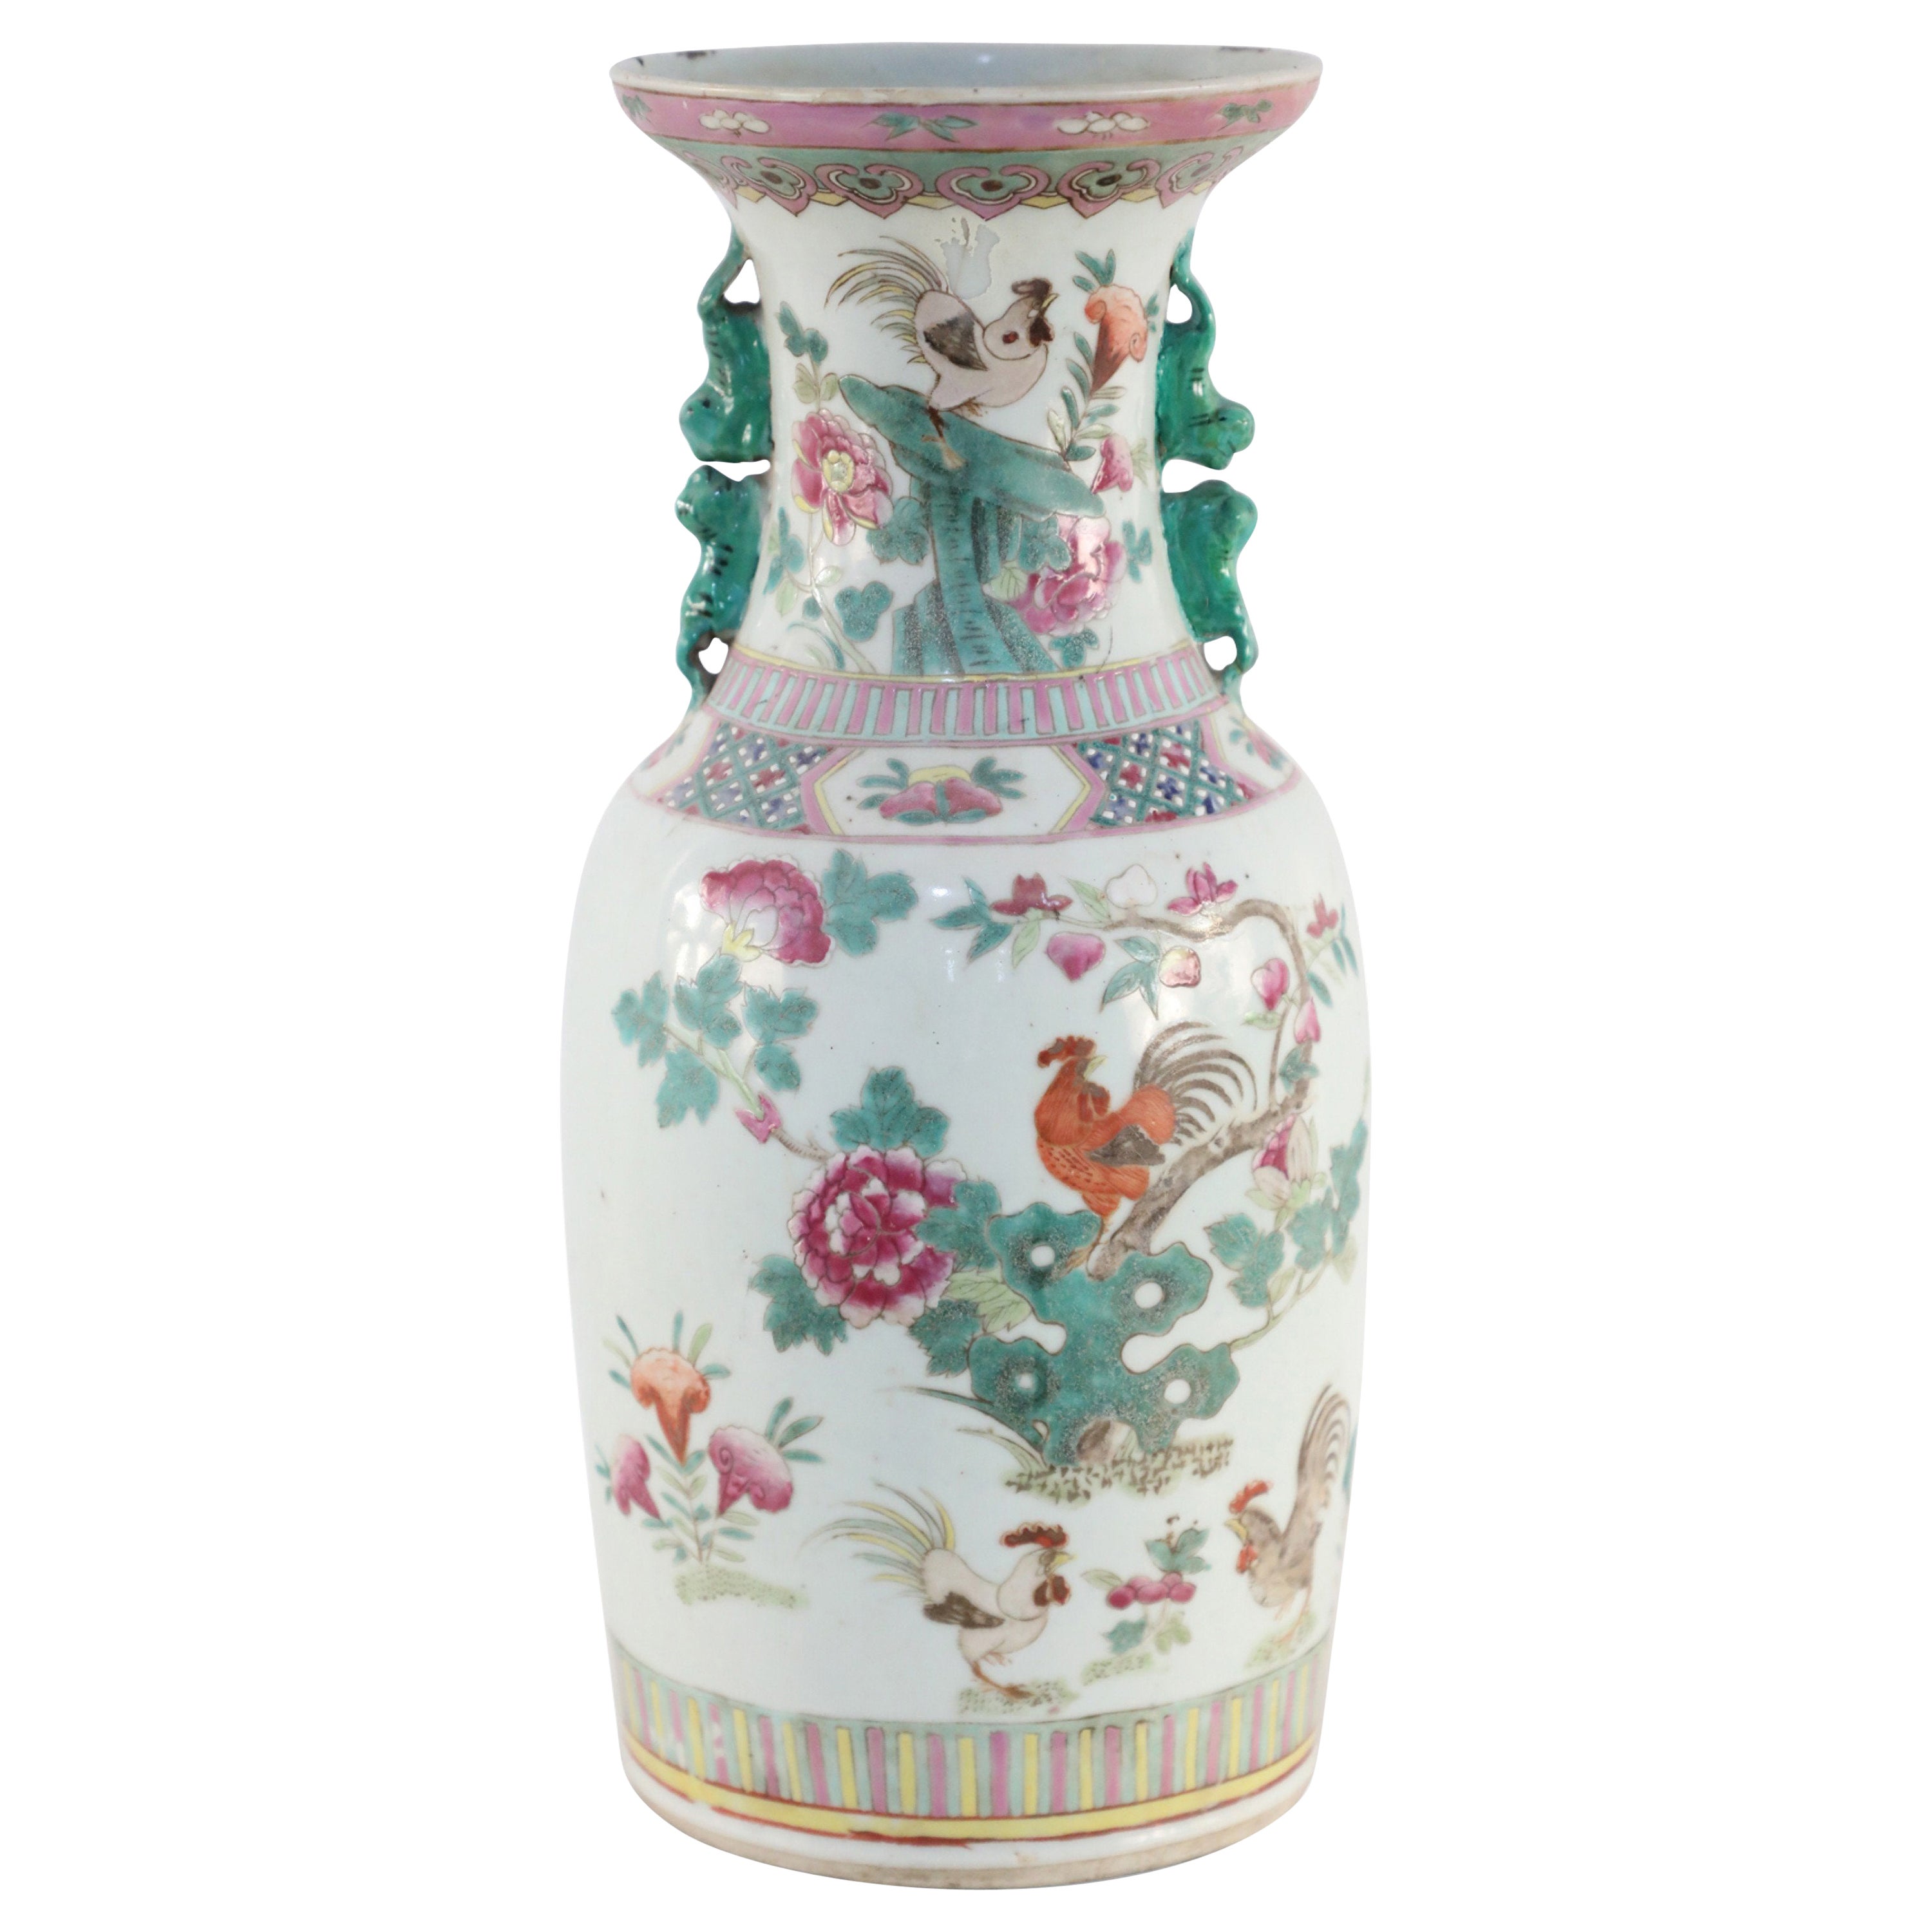 Urne chinoise en porcelaine à motifs floraux et coqs blancs, verts et roses